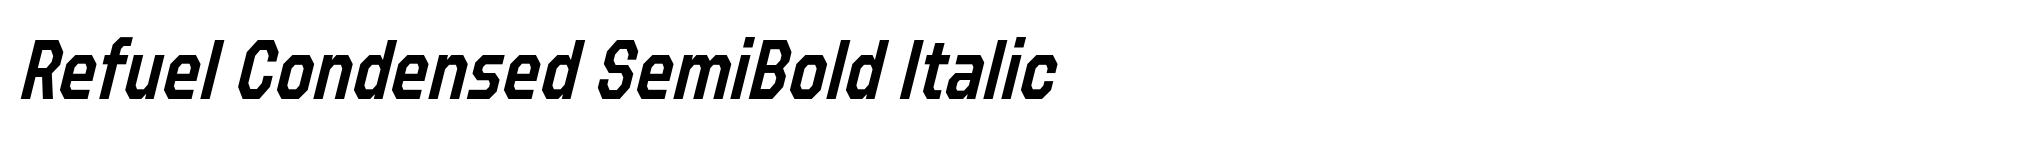 Refuel Condensed SemiBold Italic image